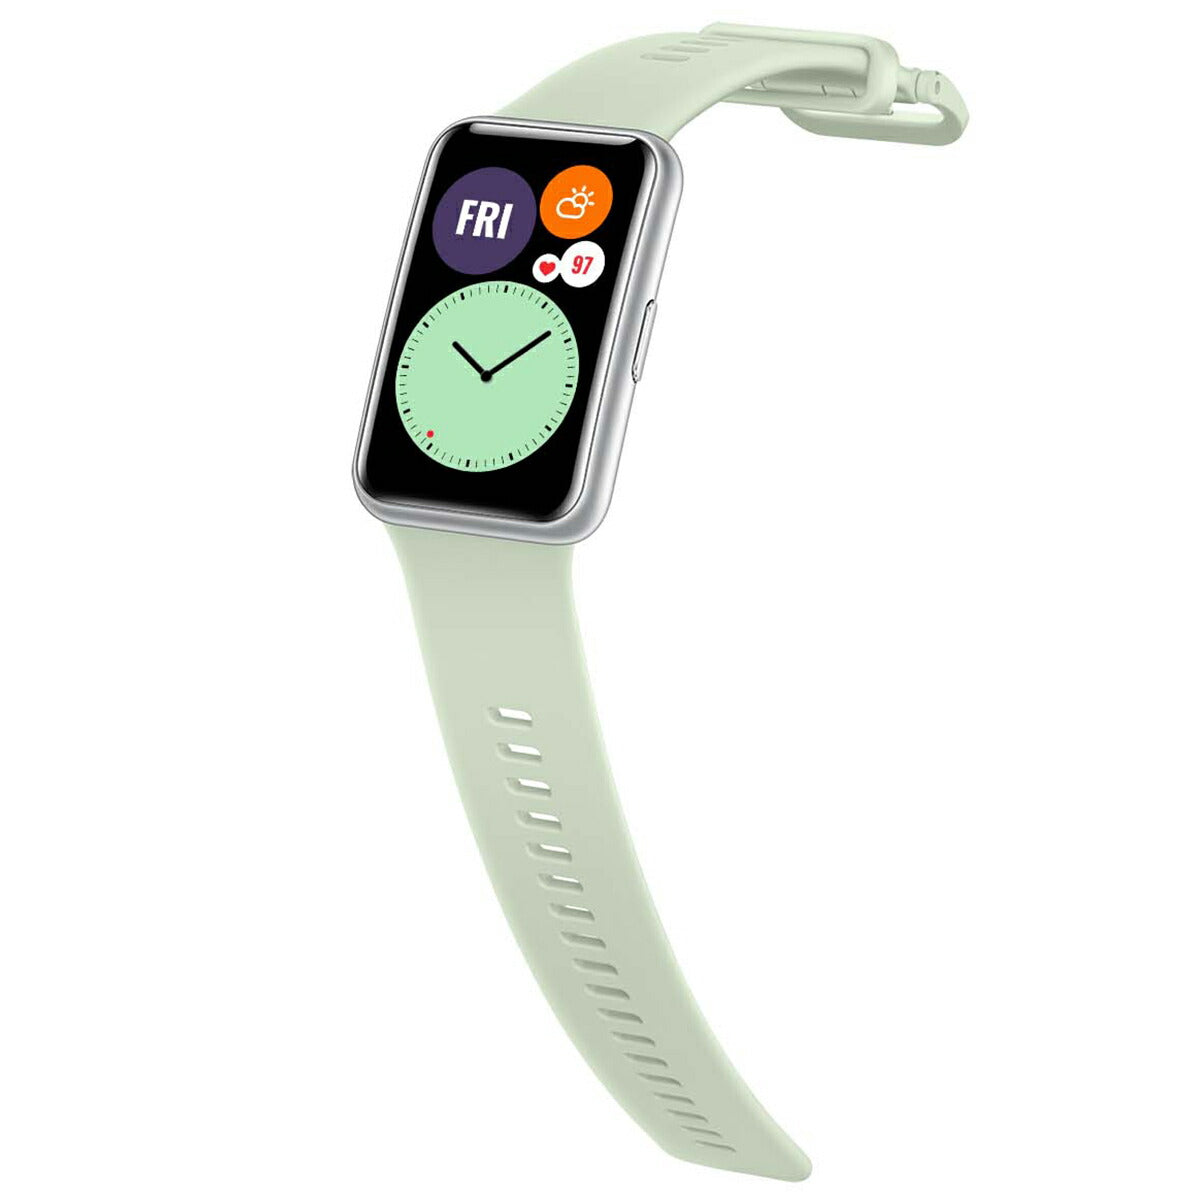 ファーウェイ HUAWEI スマートウォッチ WATCH FIT Mint Green ミントグリーン GPS 腕時計 メンズ レディース ウェアラブル 血中酸素 HV8W000120